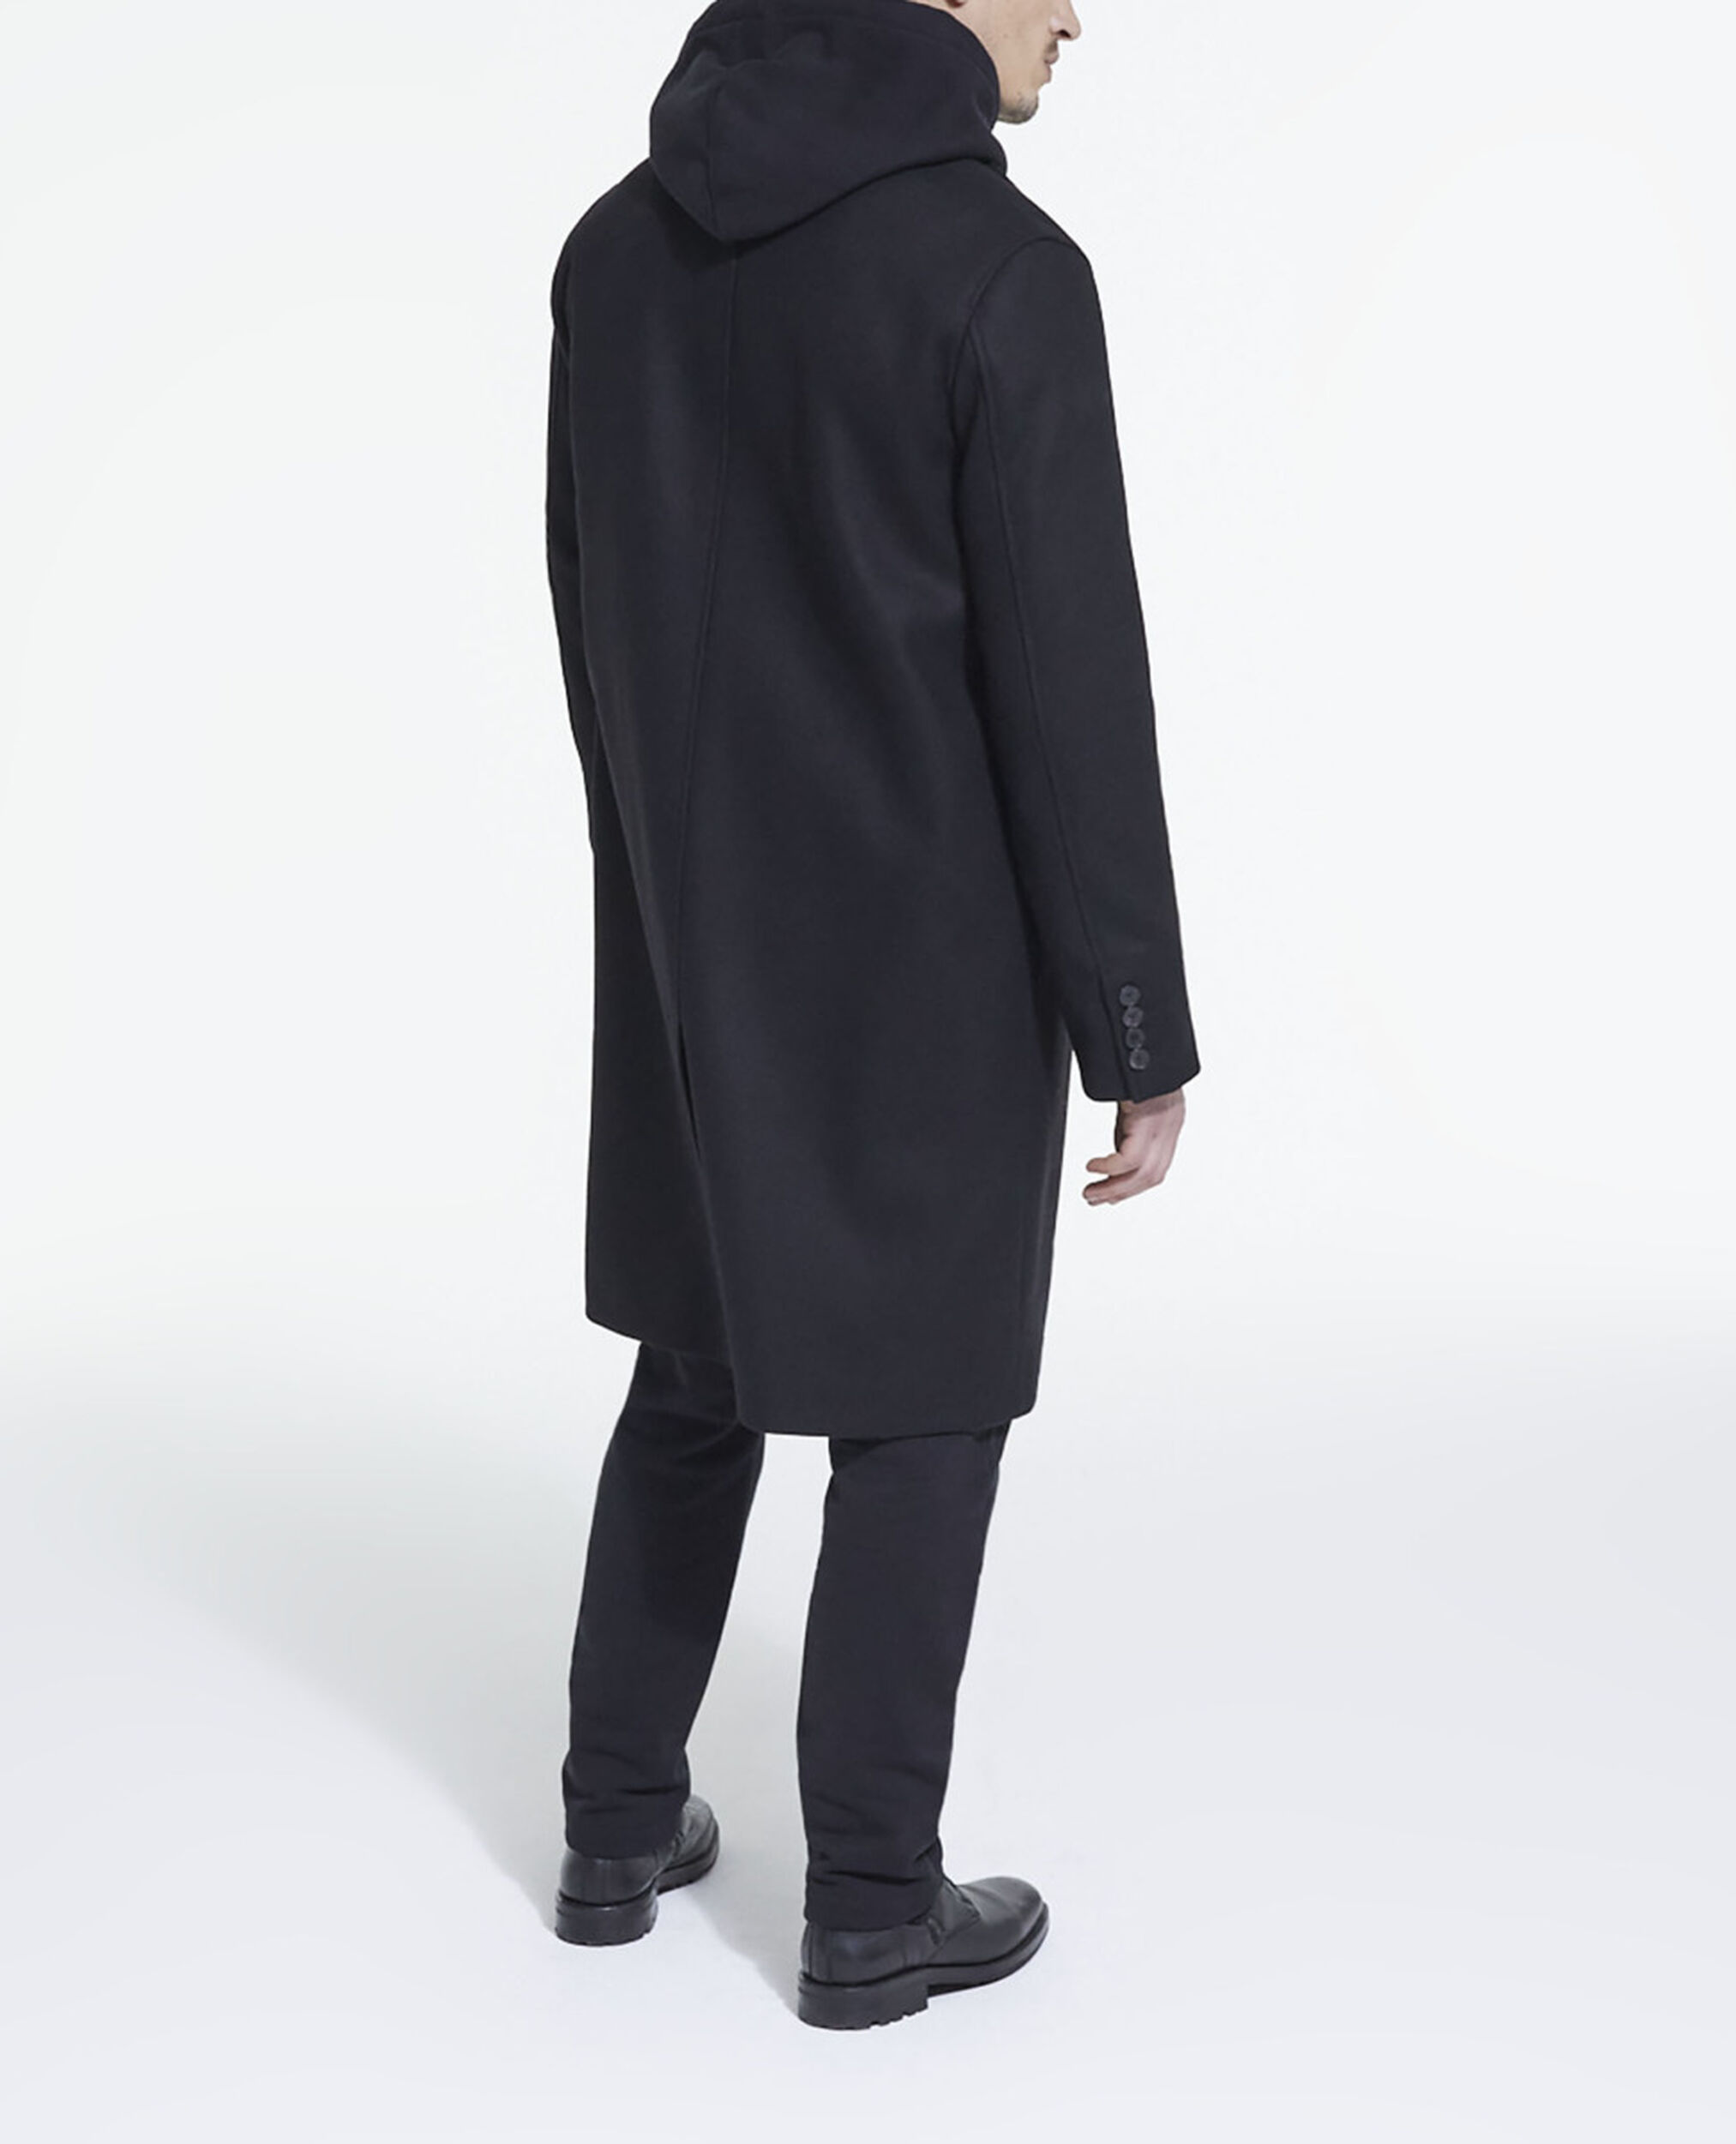 Abrigo largo lana negro, BLACK, hi-res image number null